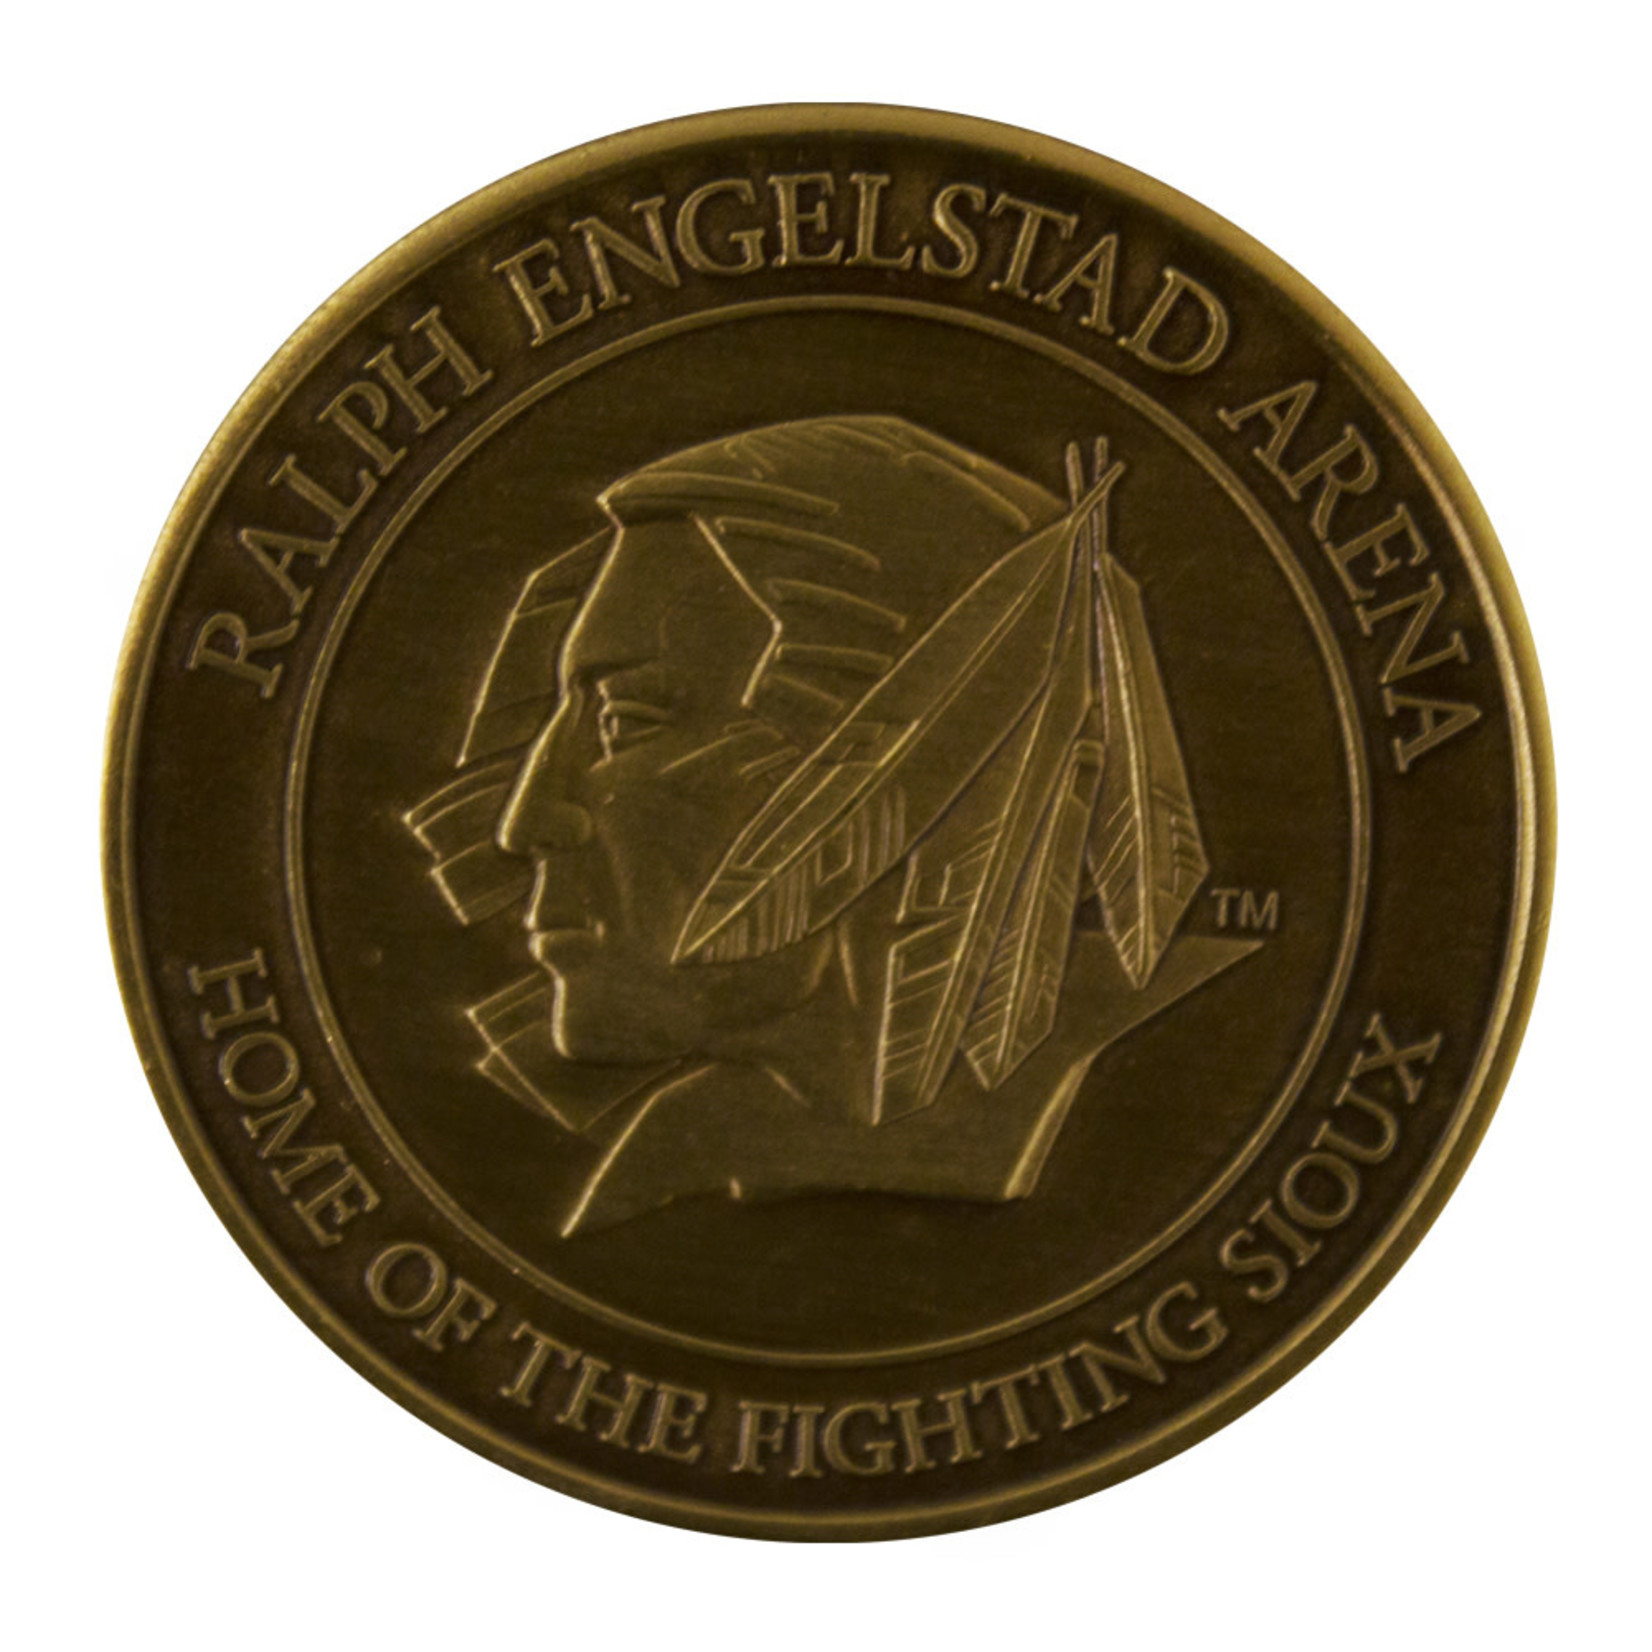 REA Gold Collector Coin 2004